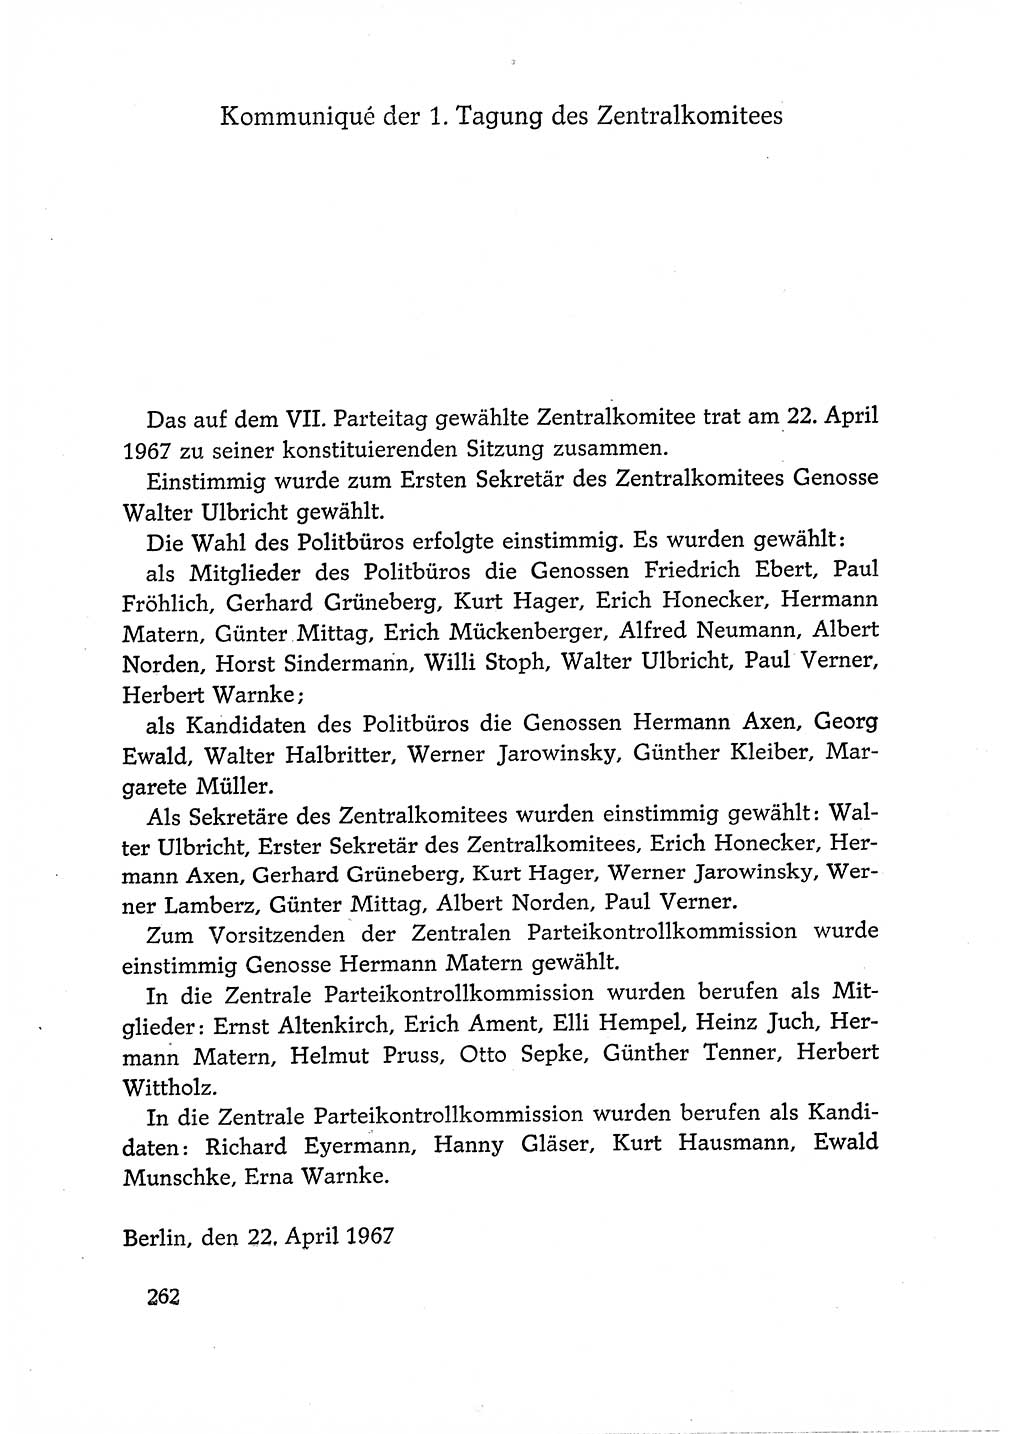 Dokumente der Sozialistischen Einheitspartei Deutschlands (SED) [Deutsche Demokratische Republik (DDR)] 1966-1967, Seite 262 (Dok. SED DDR 1966-1967, S. 262)